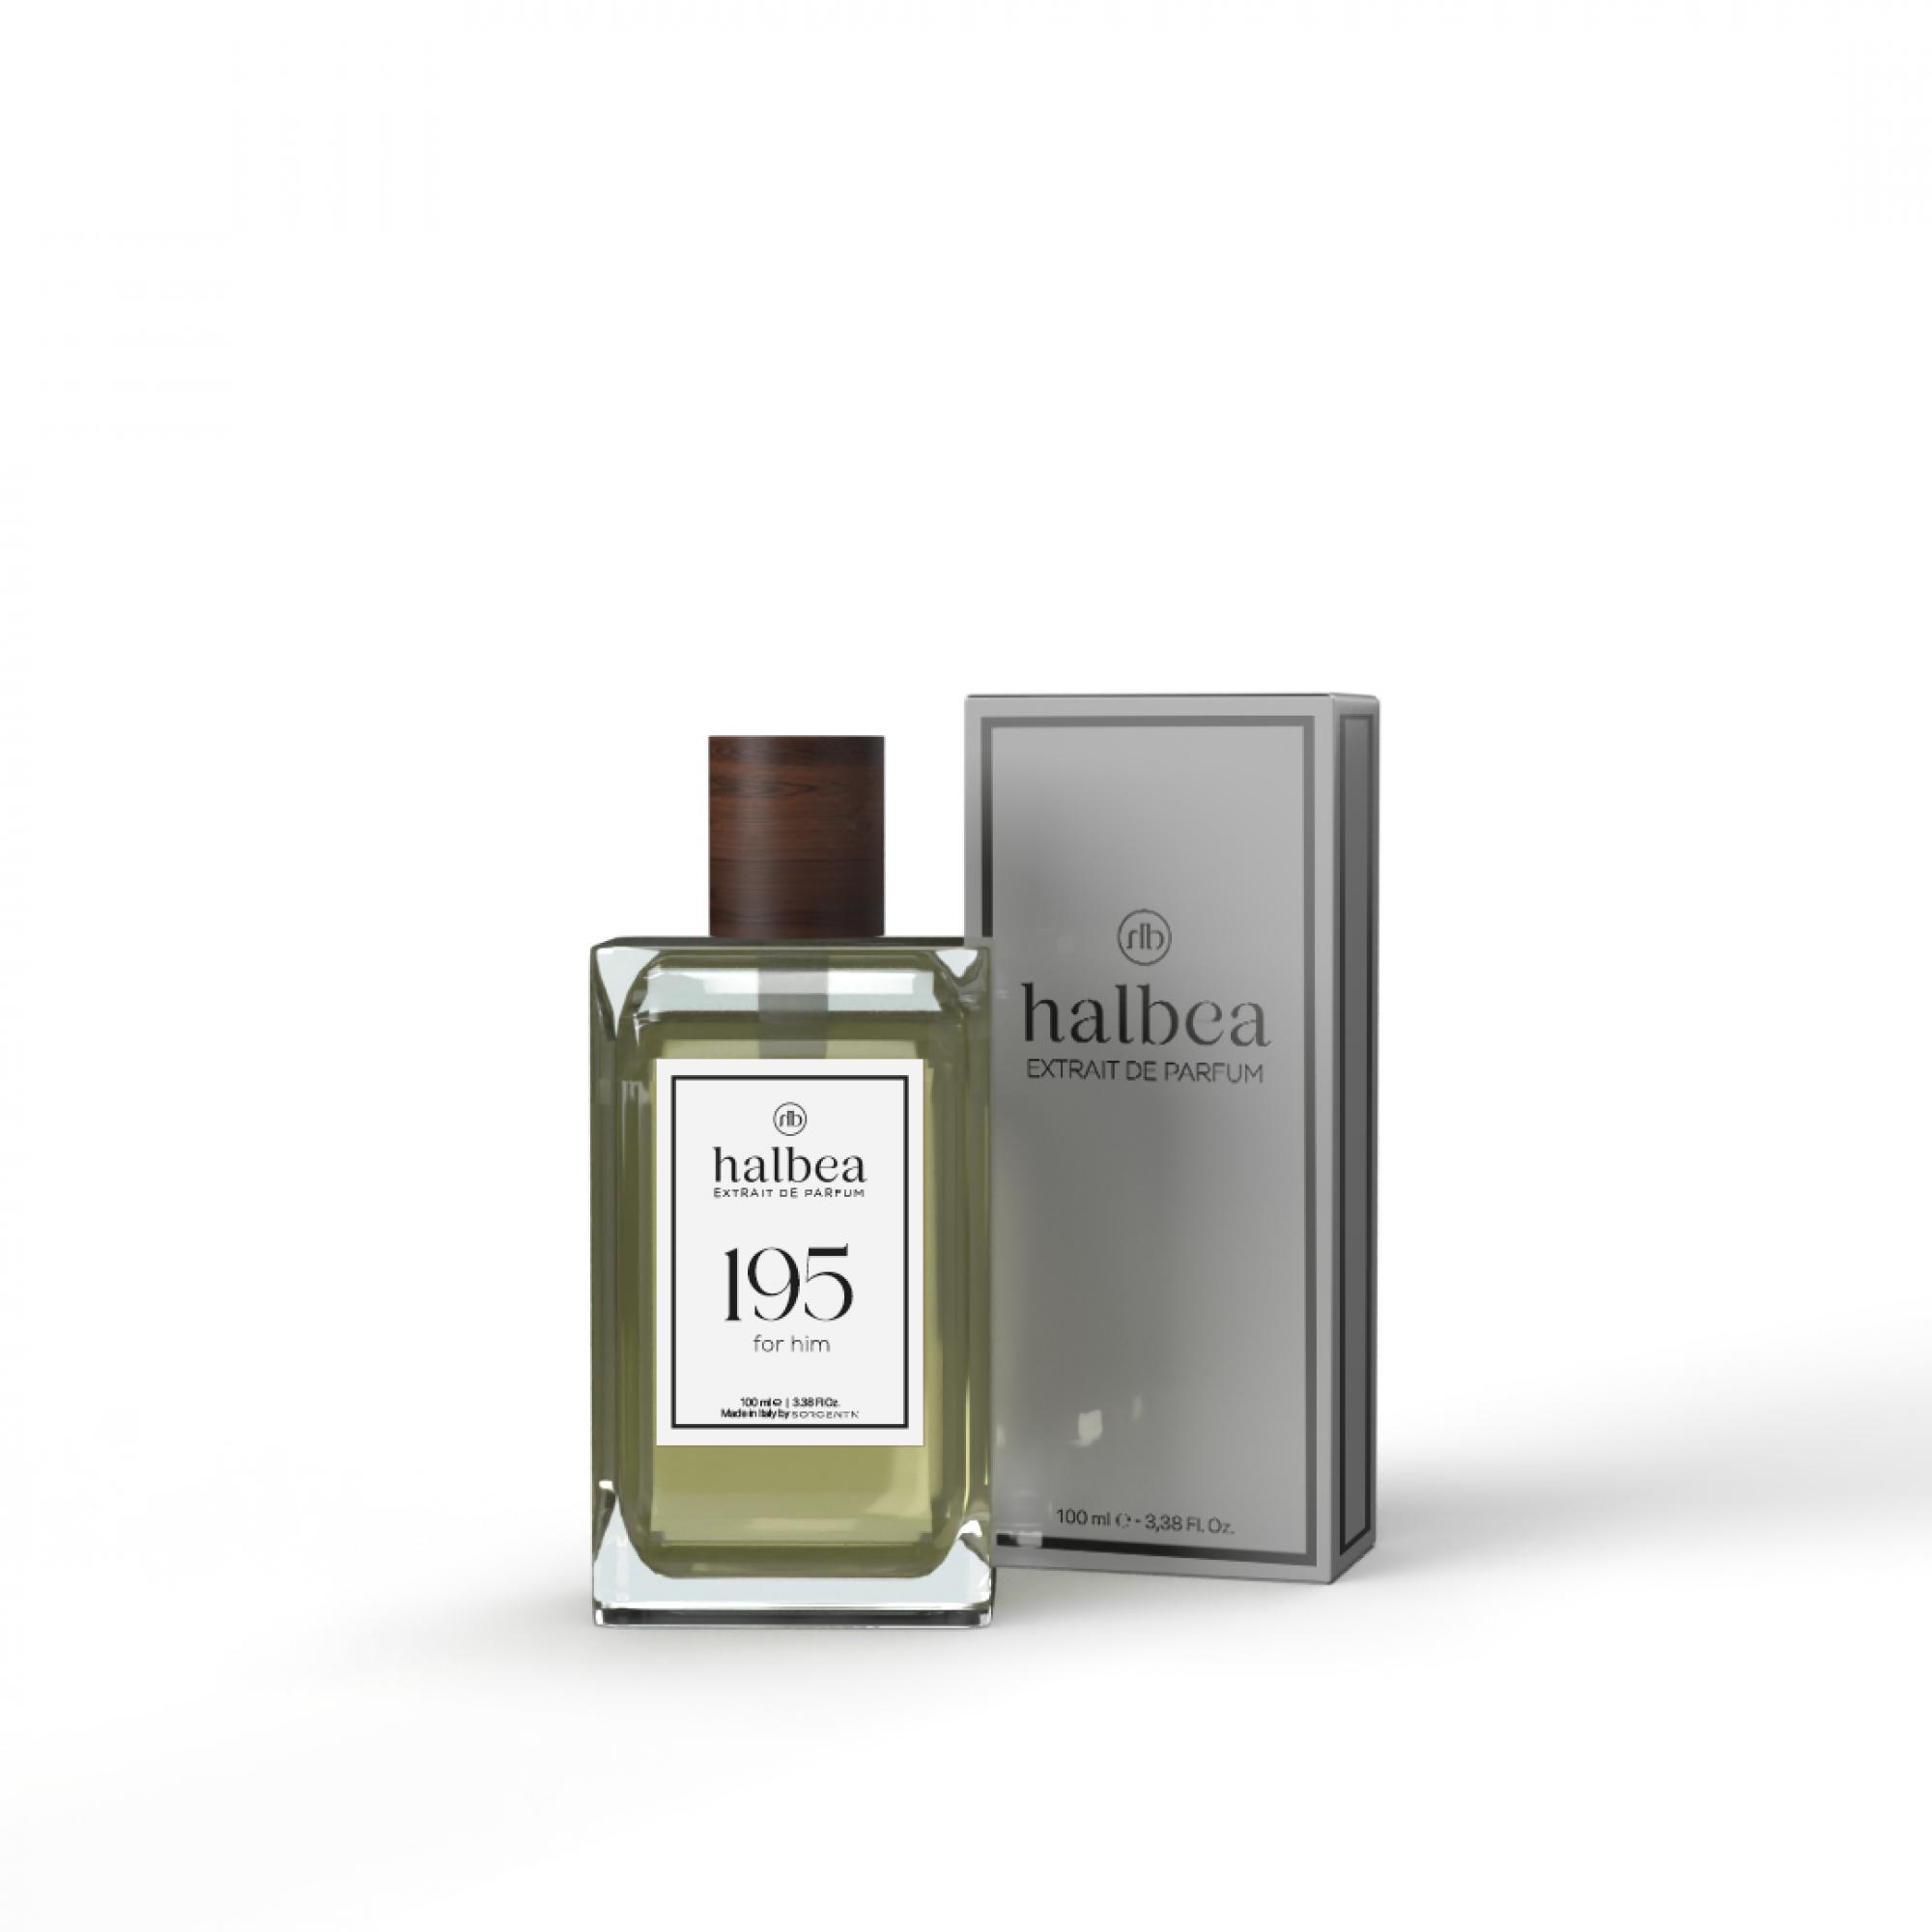 Halbea Parfum Nr. 195 insp. by Cartier Déclaration Sorgenta Duftzwillinge 100ml